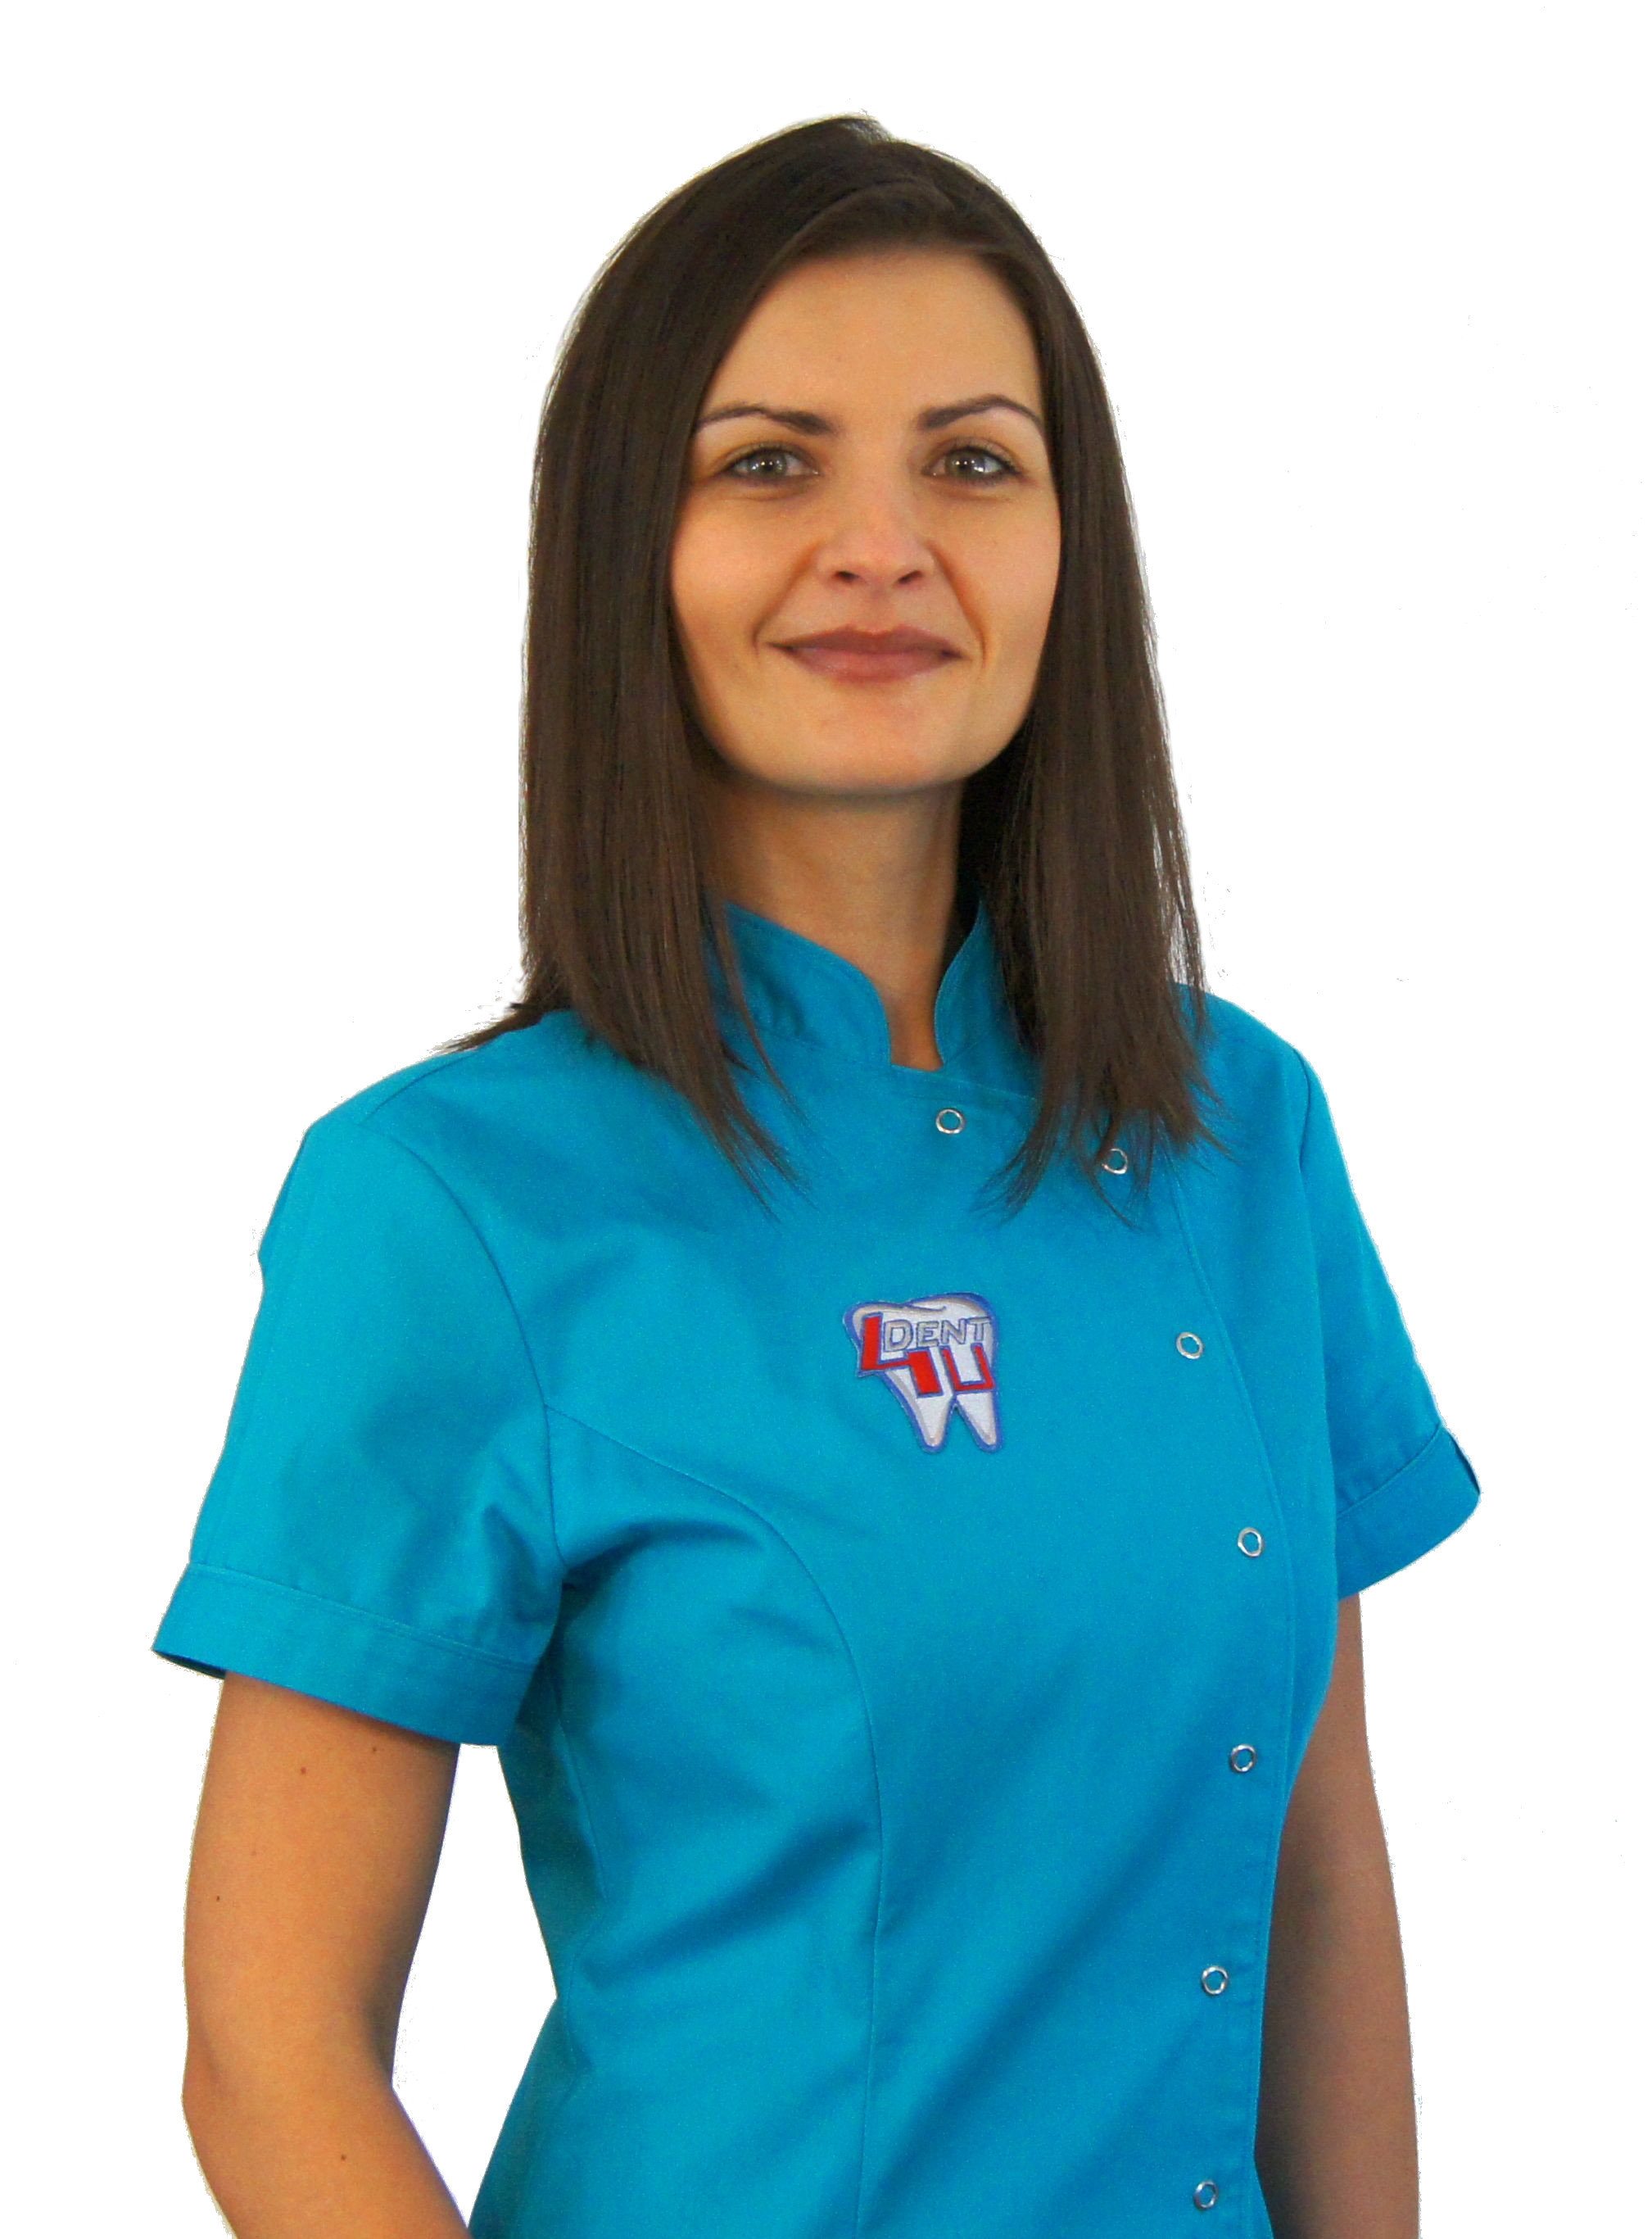 Dental assistant Katarzyna Gomulska